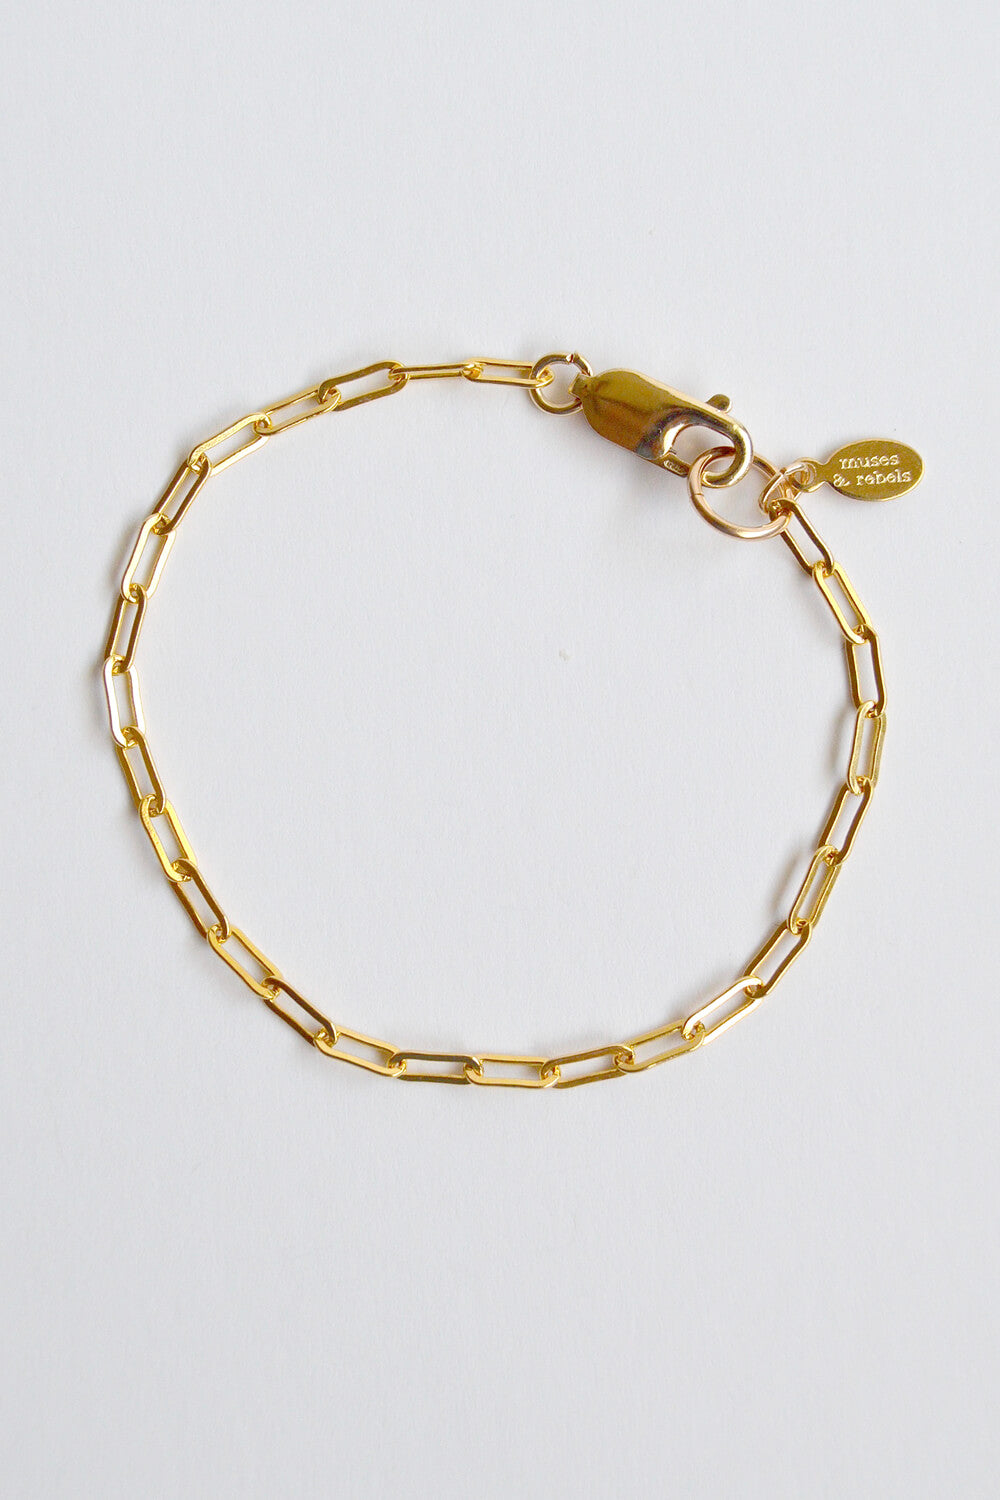 custom length paperclip chain bracelet - 14k gold